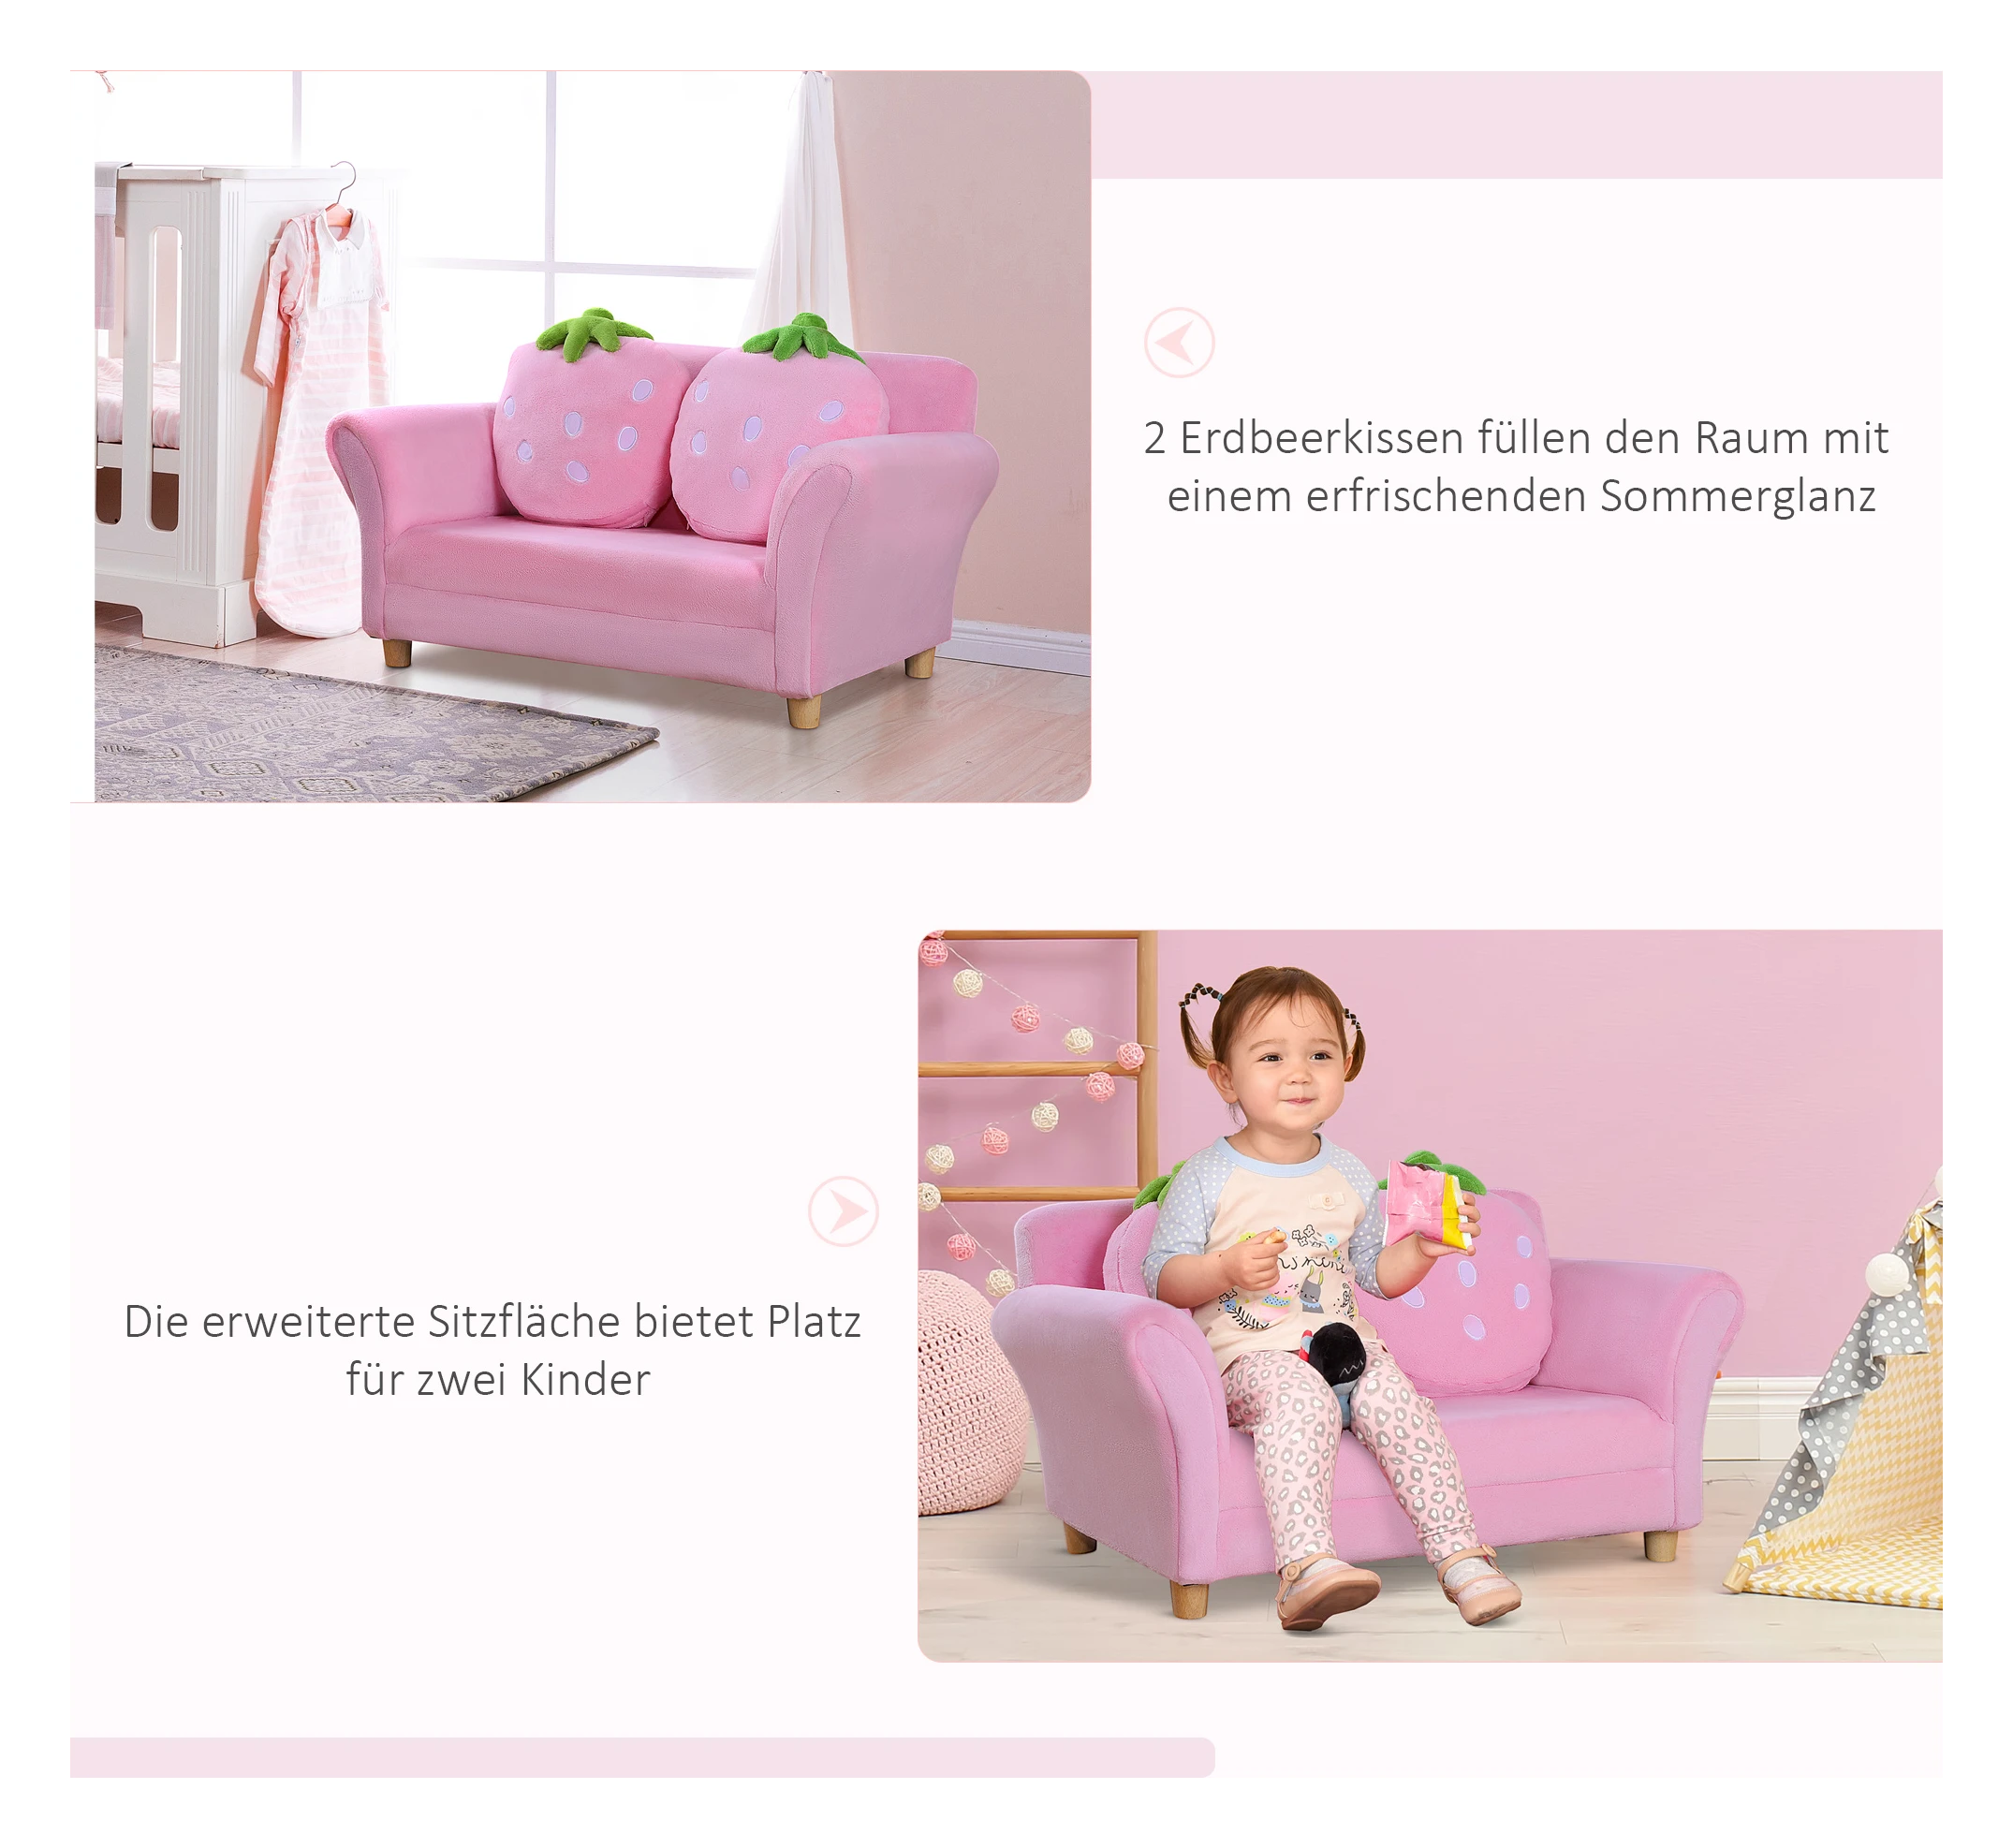 keuken paneel Refrein Kinderbank kinderfauteuil sofa bank kinderstoel kinderkamer zachte bank  tweezitsbank eenzitsbank (aardbeienbank) - SimpleDeal.nl